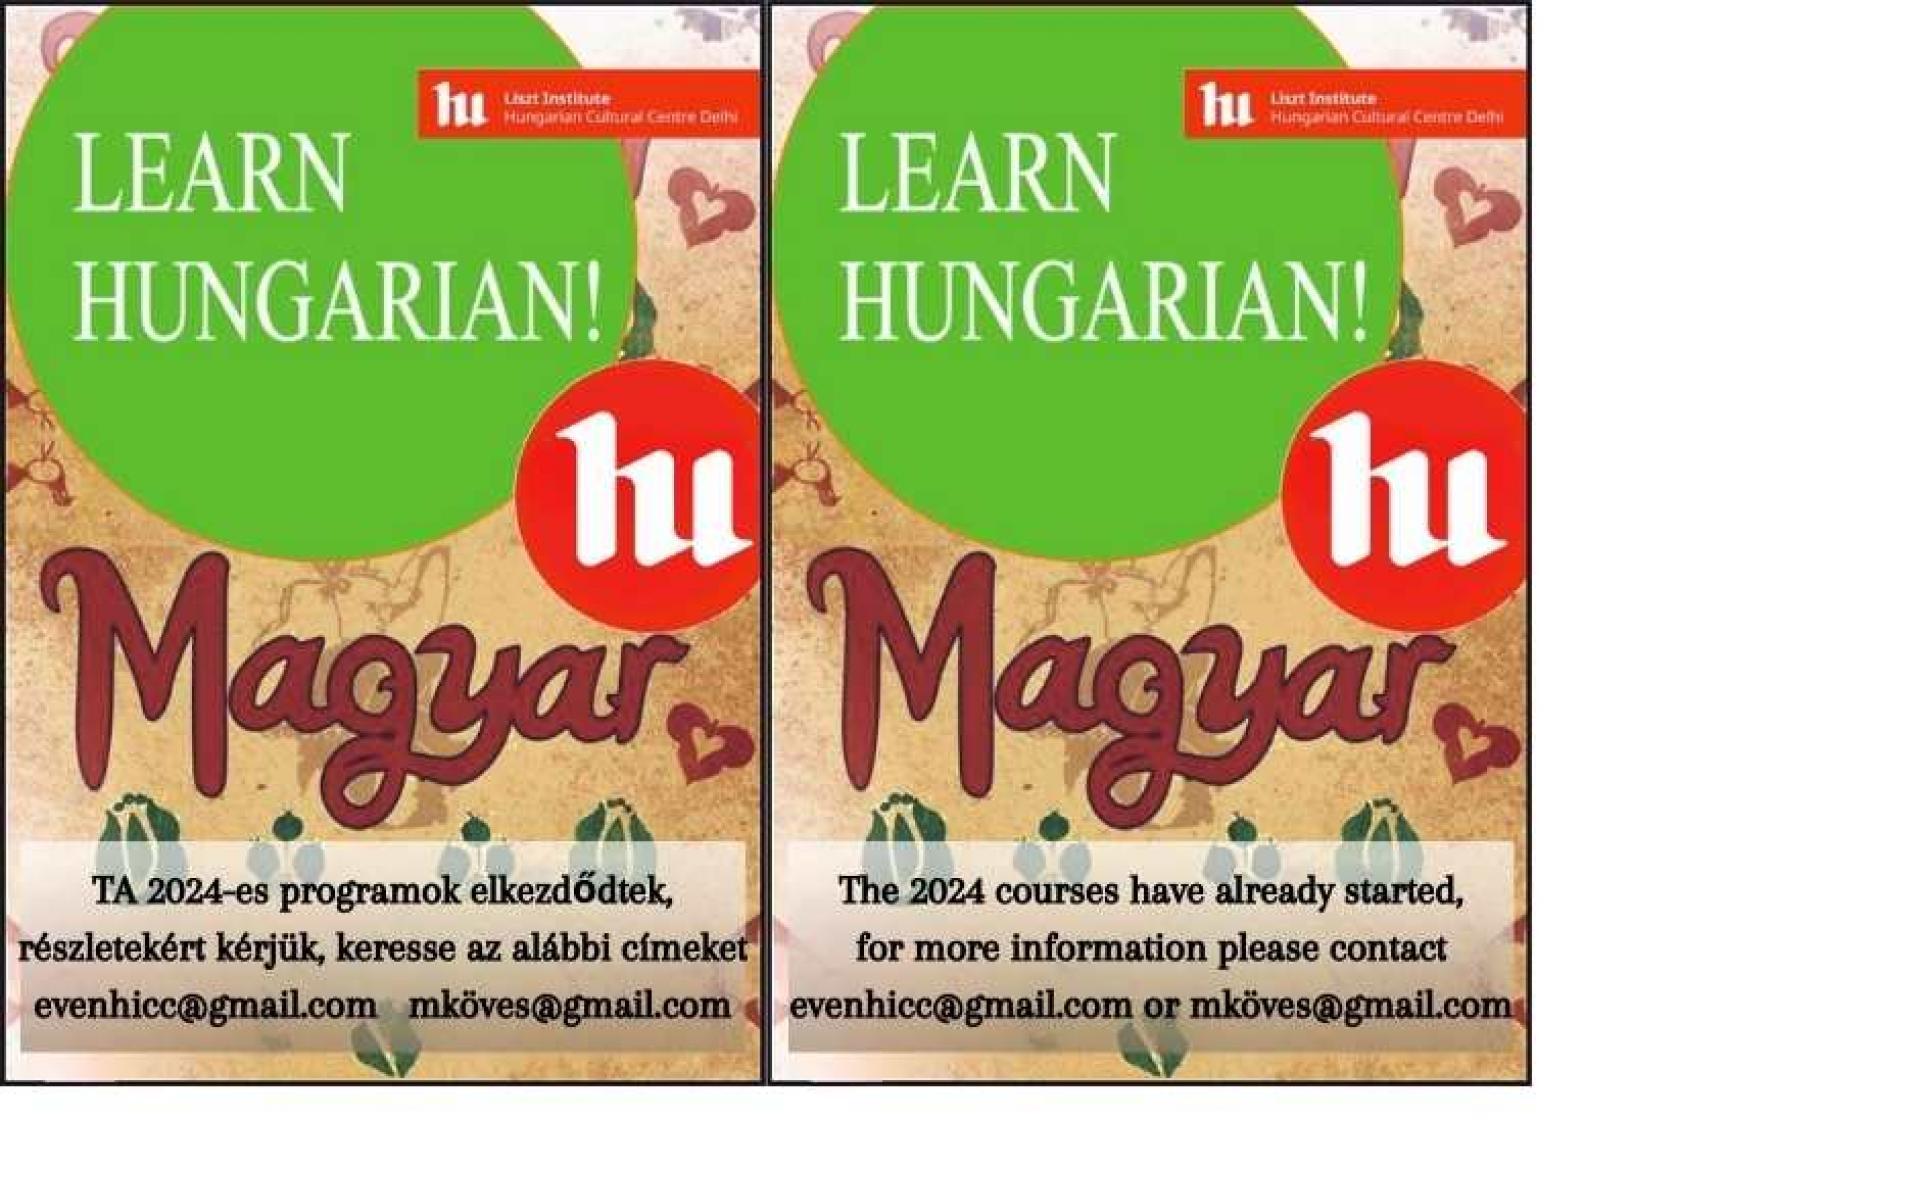 Learn Hungarian!